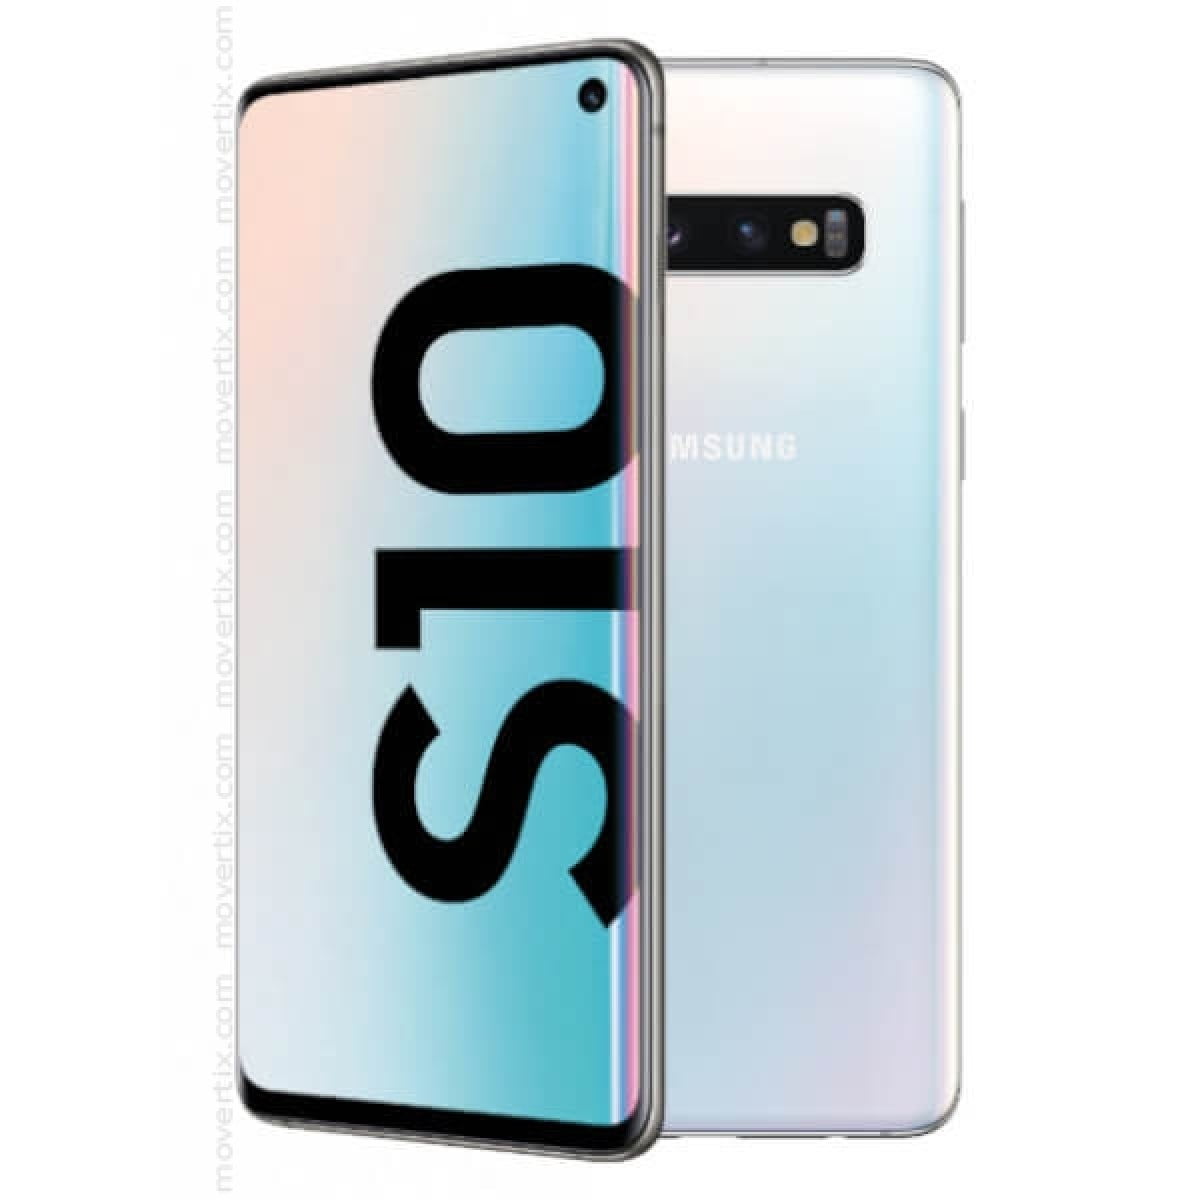 Samsung Galaxy S10 White – PhoneMart